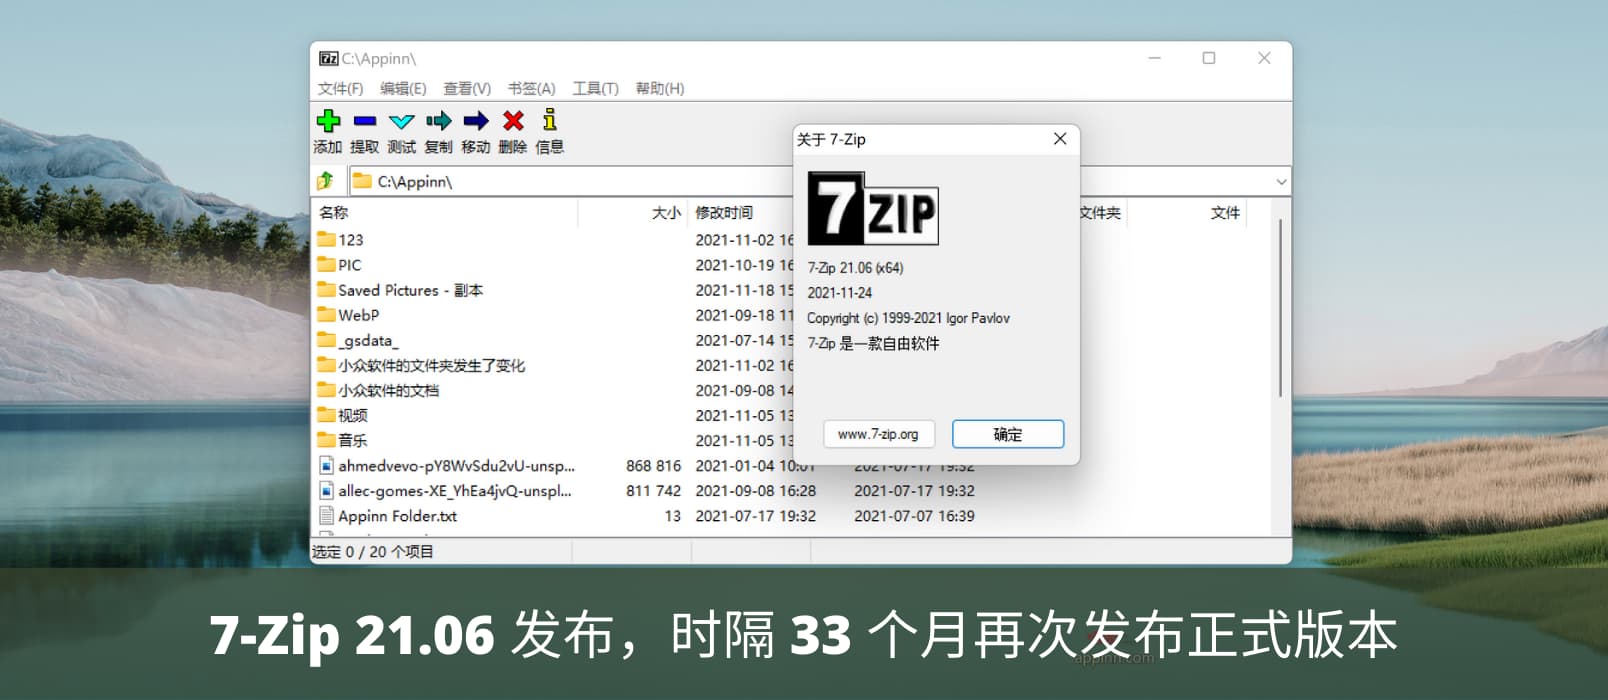 开源压缩工具 7-Zip 21.06 发布下载，时隔 33 个月再次发布正式版本